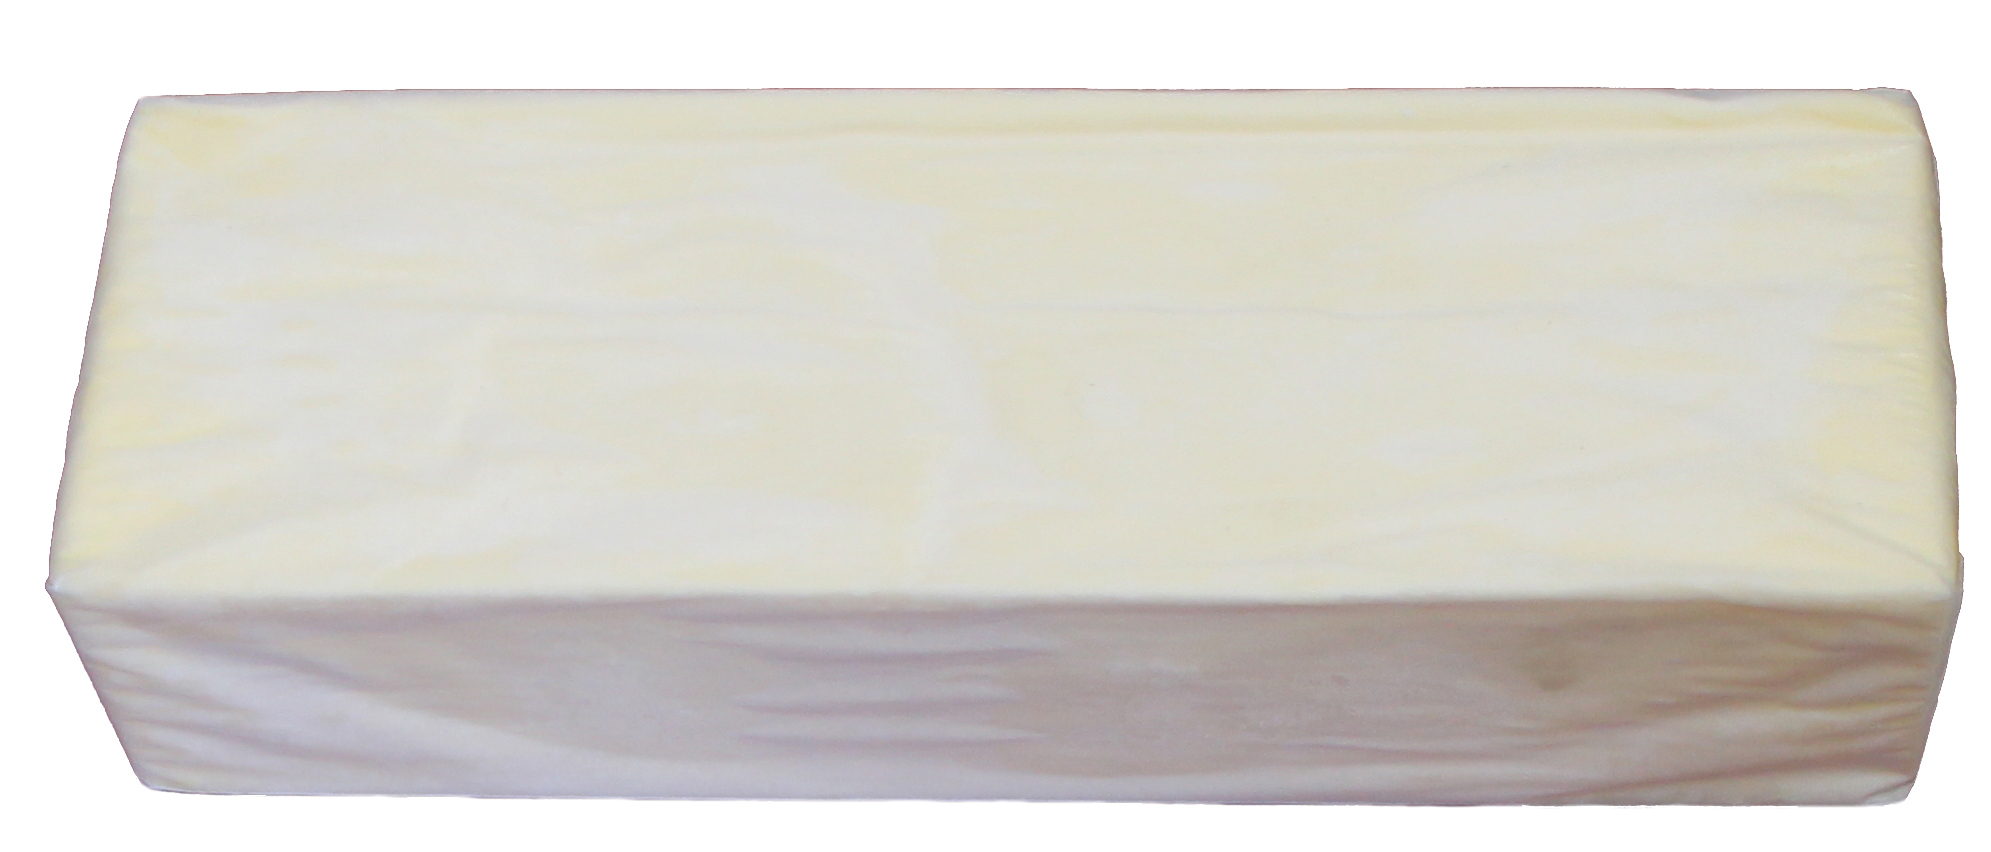 Масло сливочное 500гр. Масло Крестьянское сладкосливочное 500 гр. Масло сливочное 82.5 весовое 20 кг. Масло Юкмп 180 г. Масло сливочное в пергаменте.